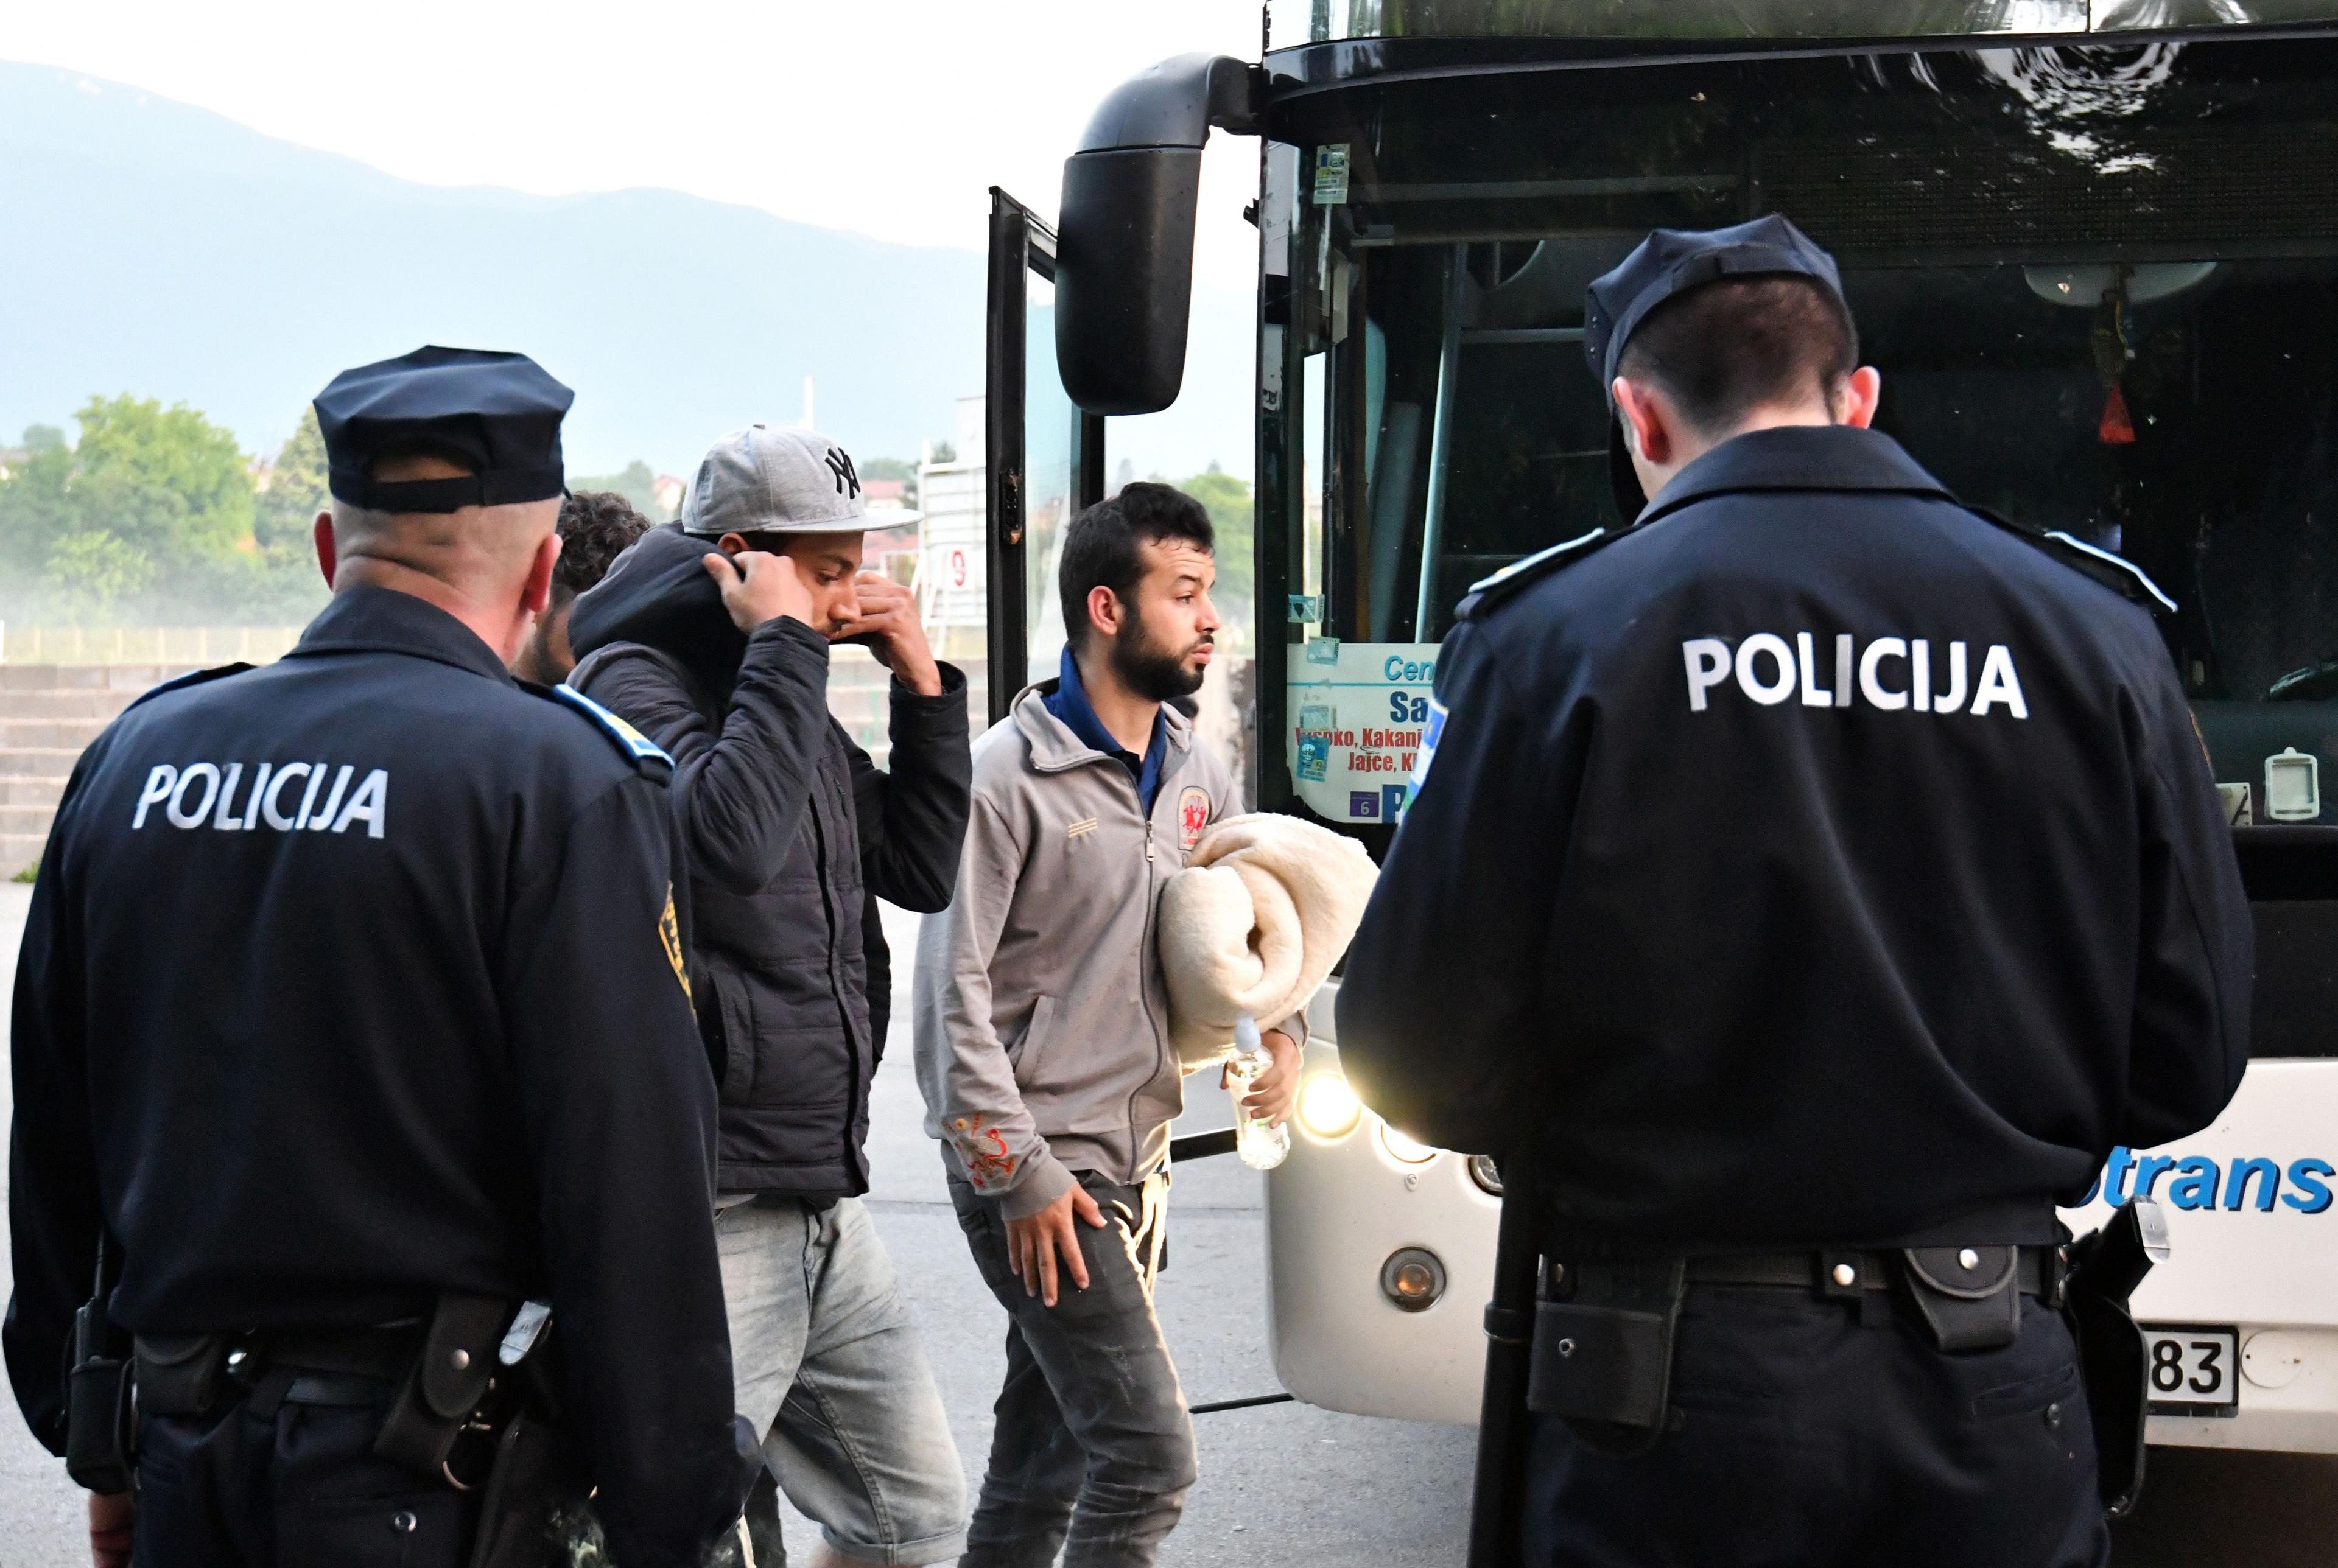 Migranti koji idu kroz BiH imaju jedini cilj - da odu dalje - Avaz